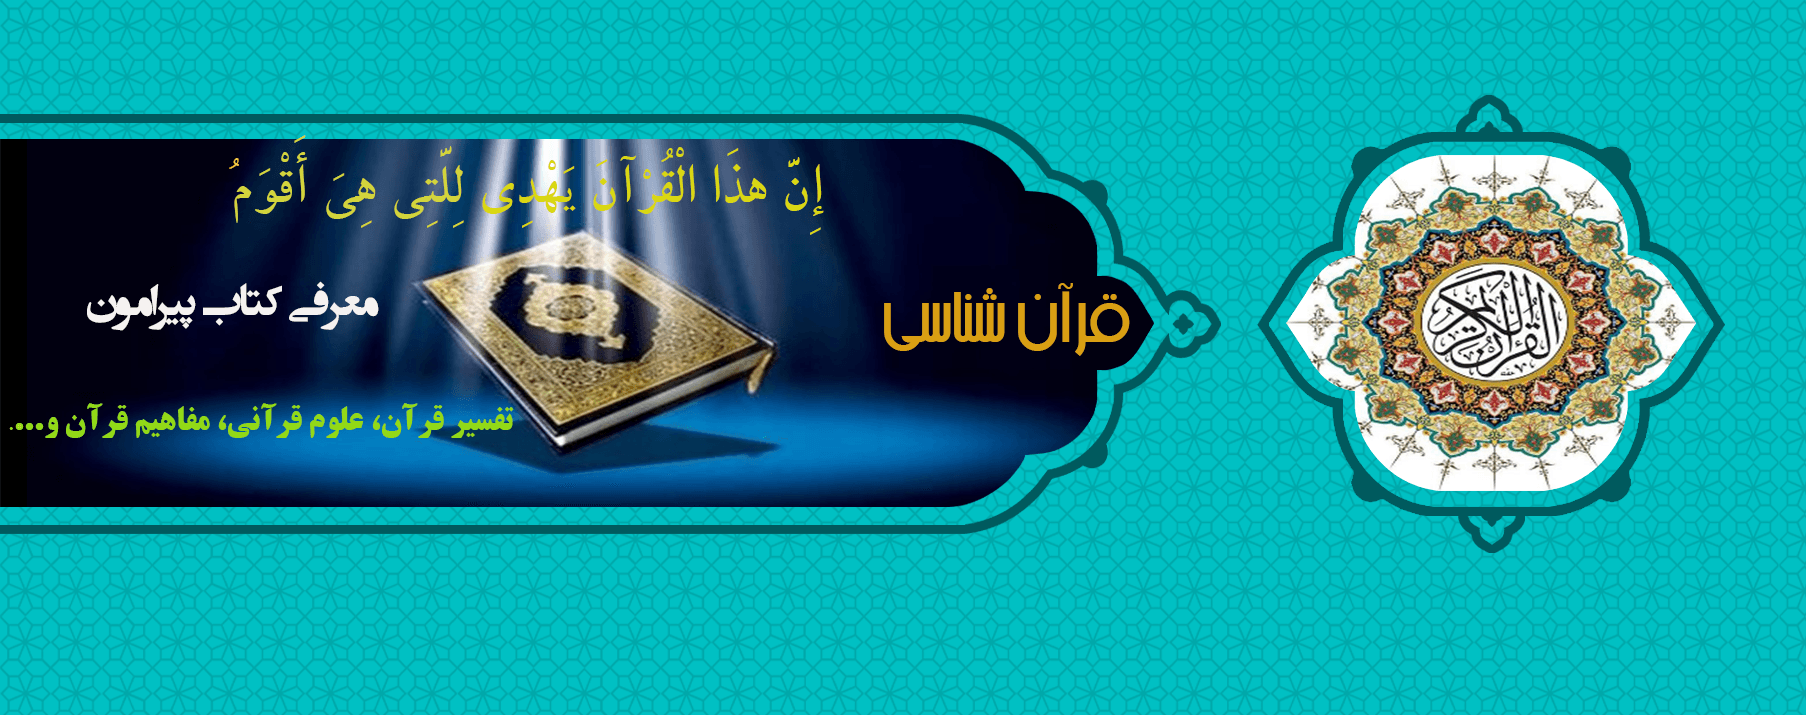 قرآن، کتاب هدایت و بهترین راه کمال انسان